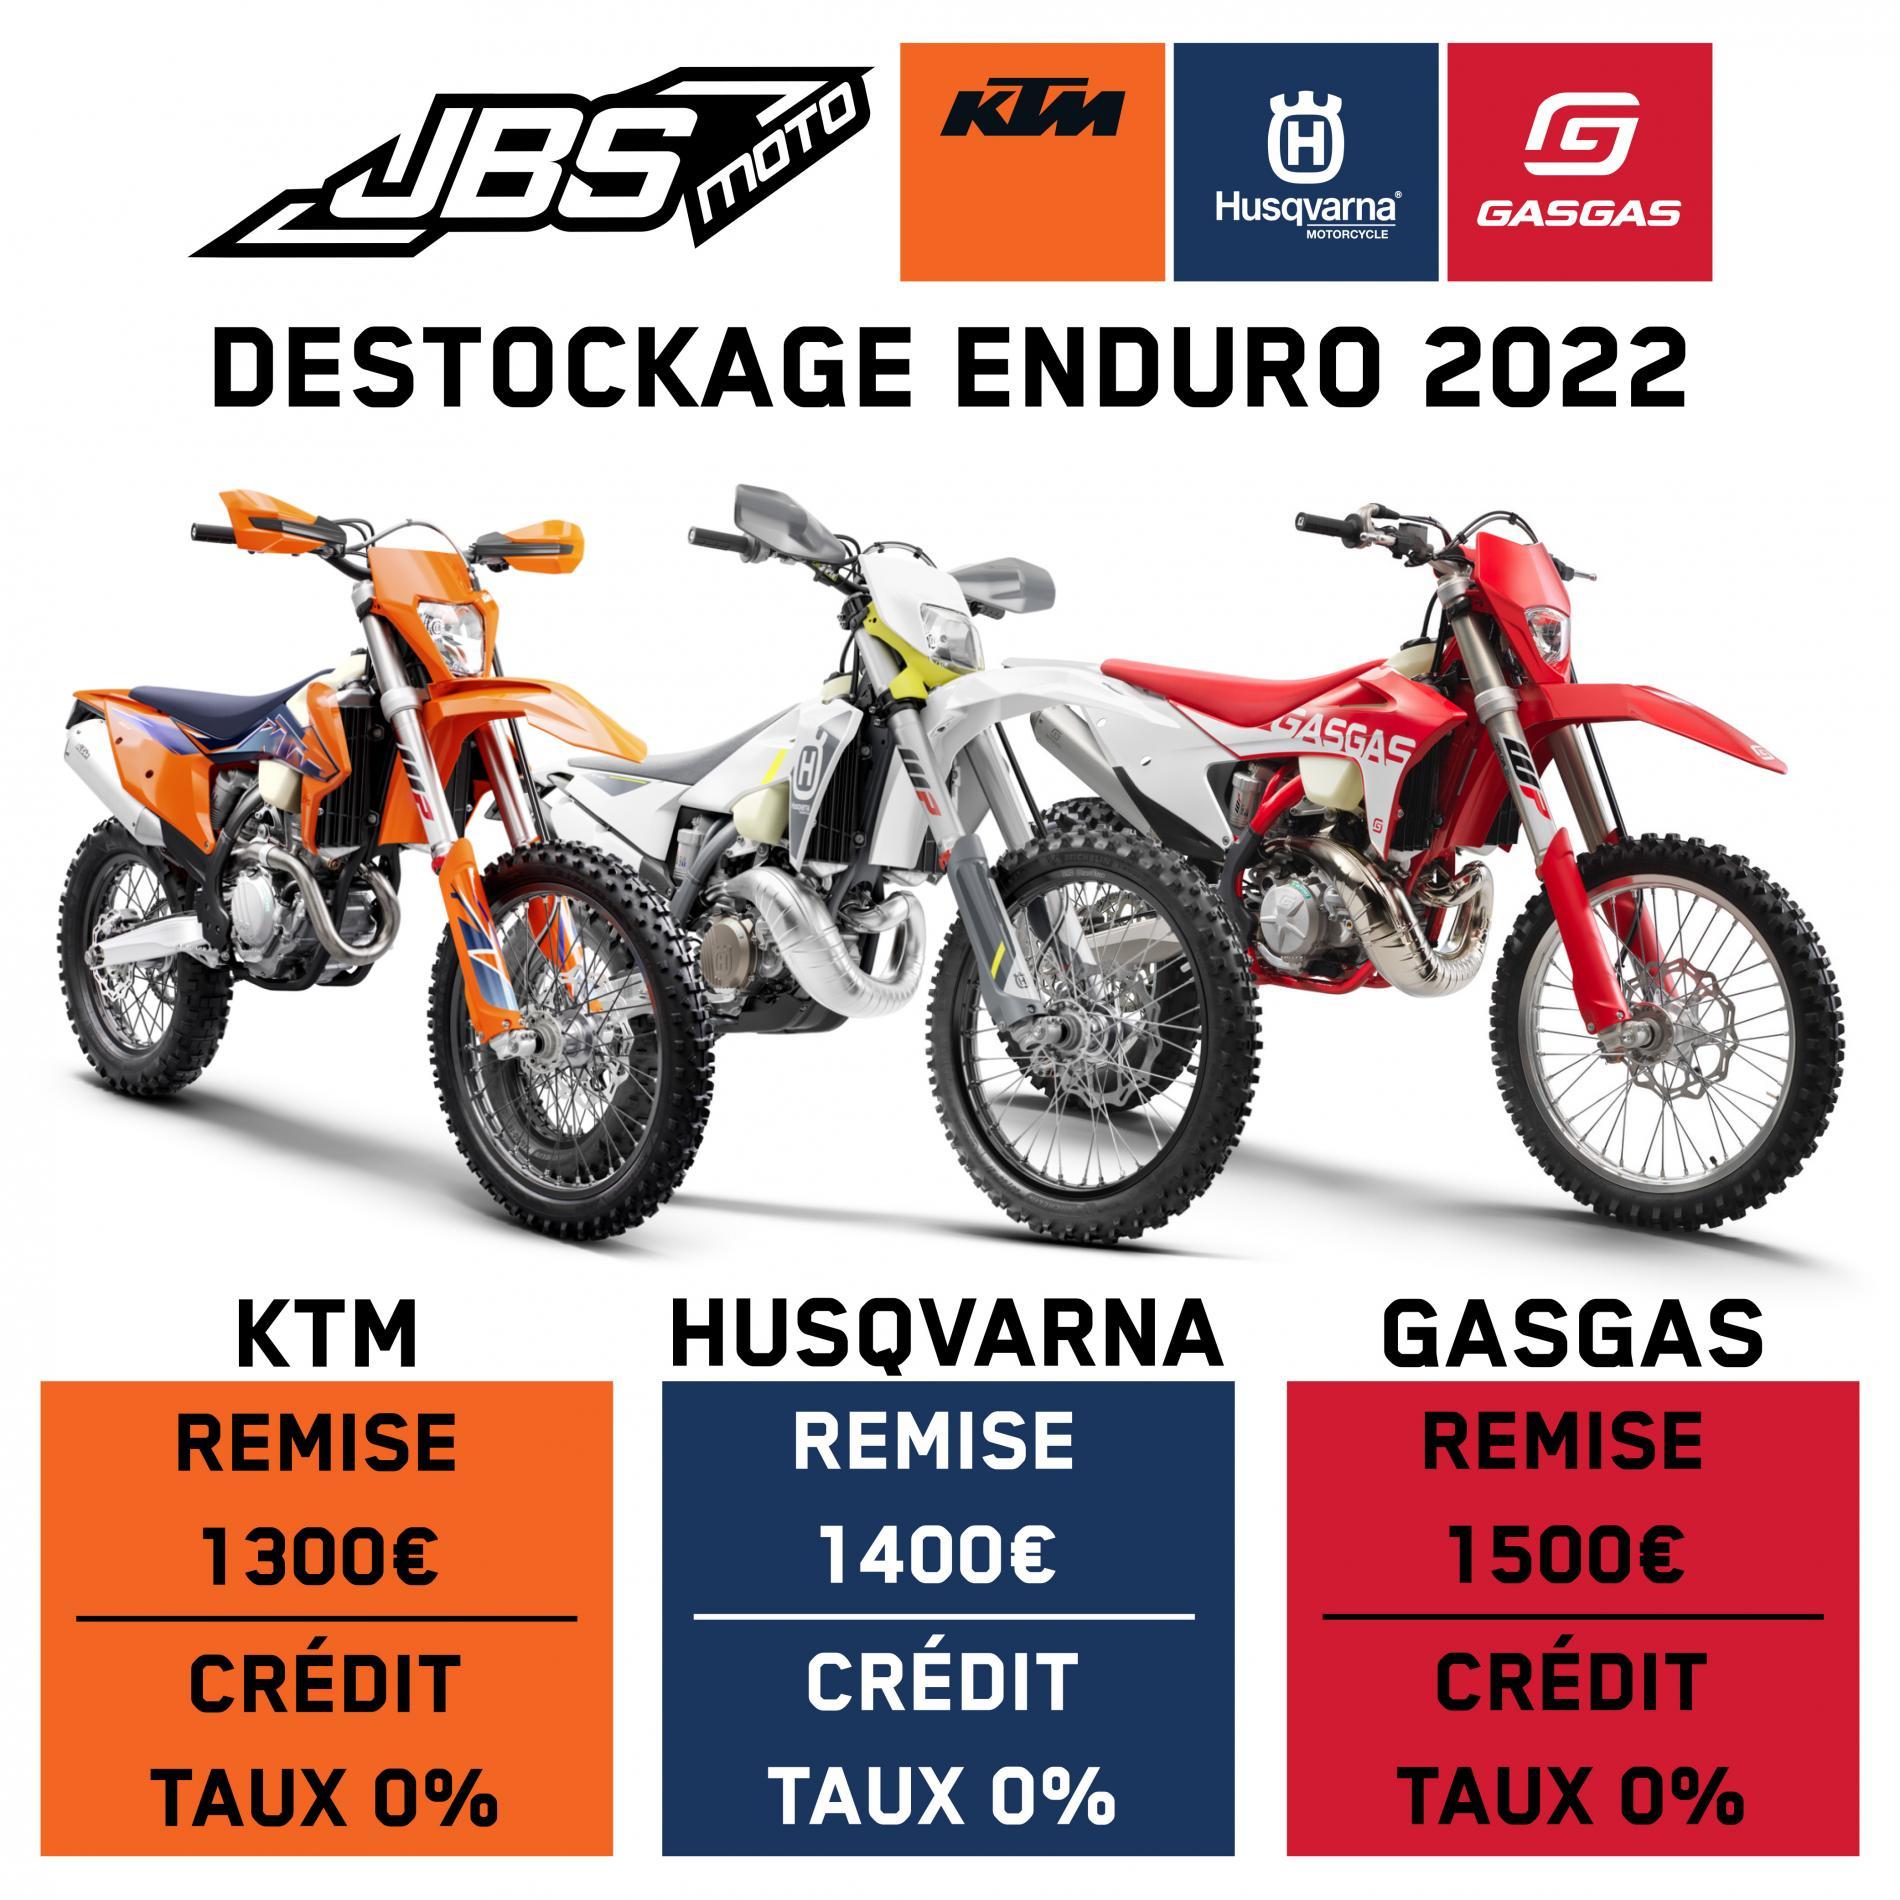 Destockage Enduro 2022